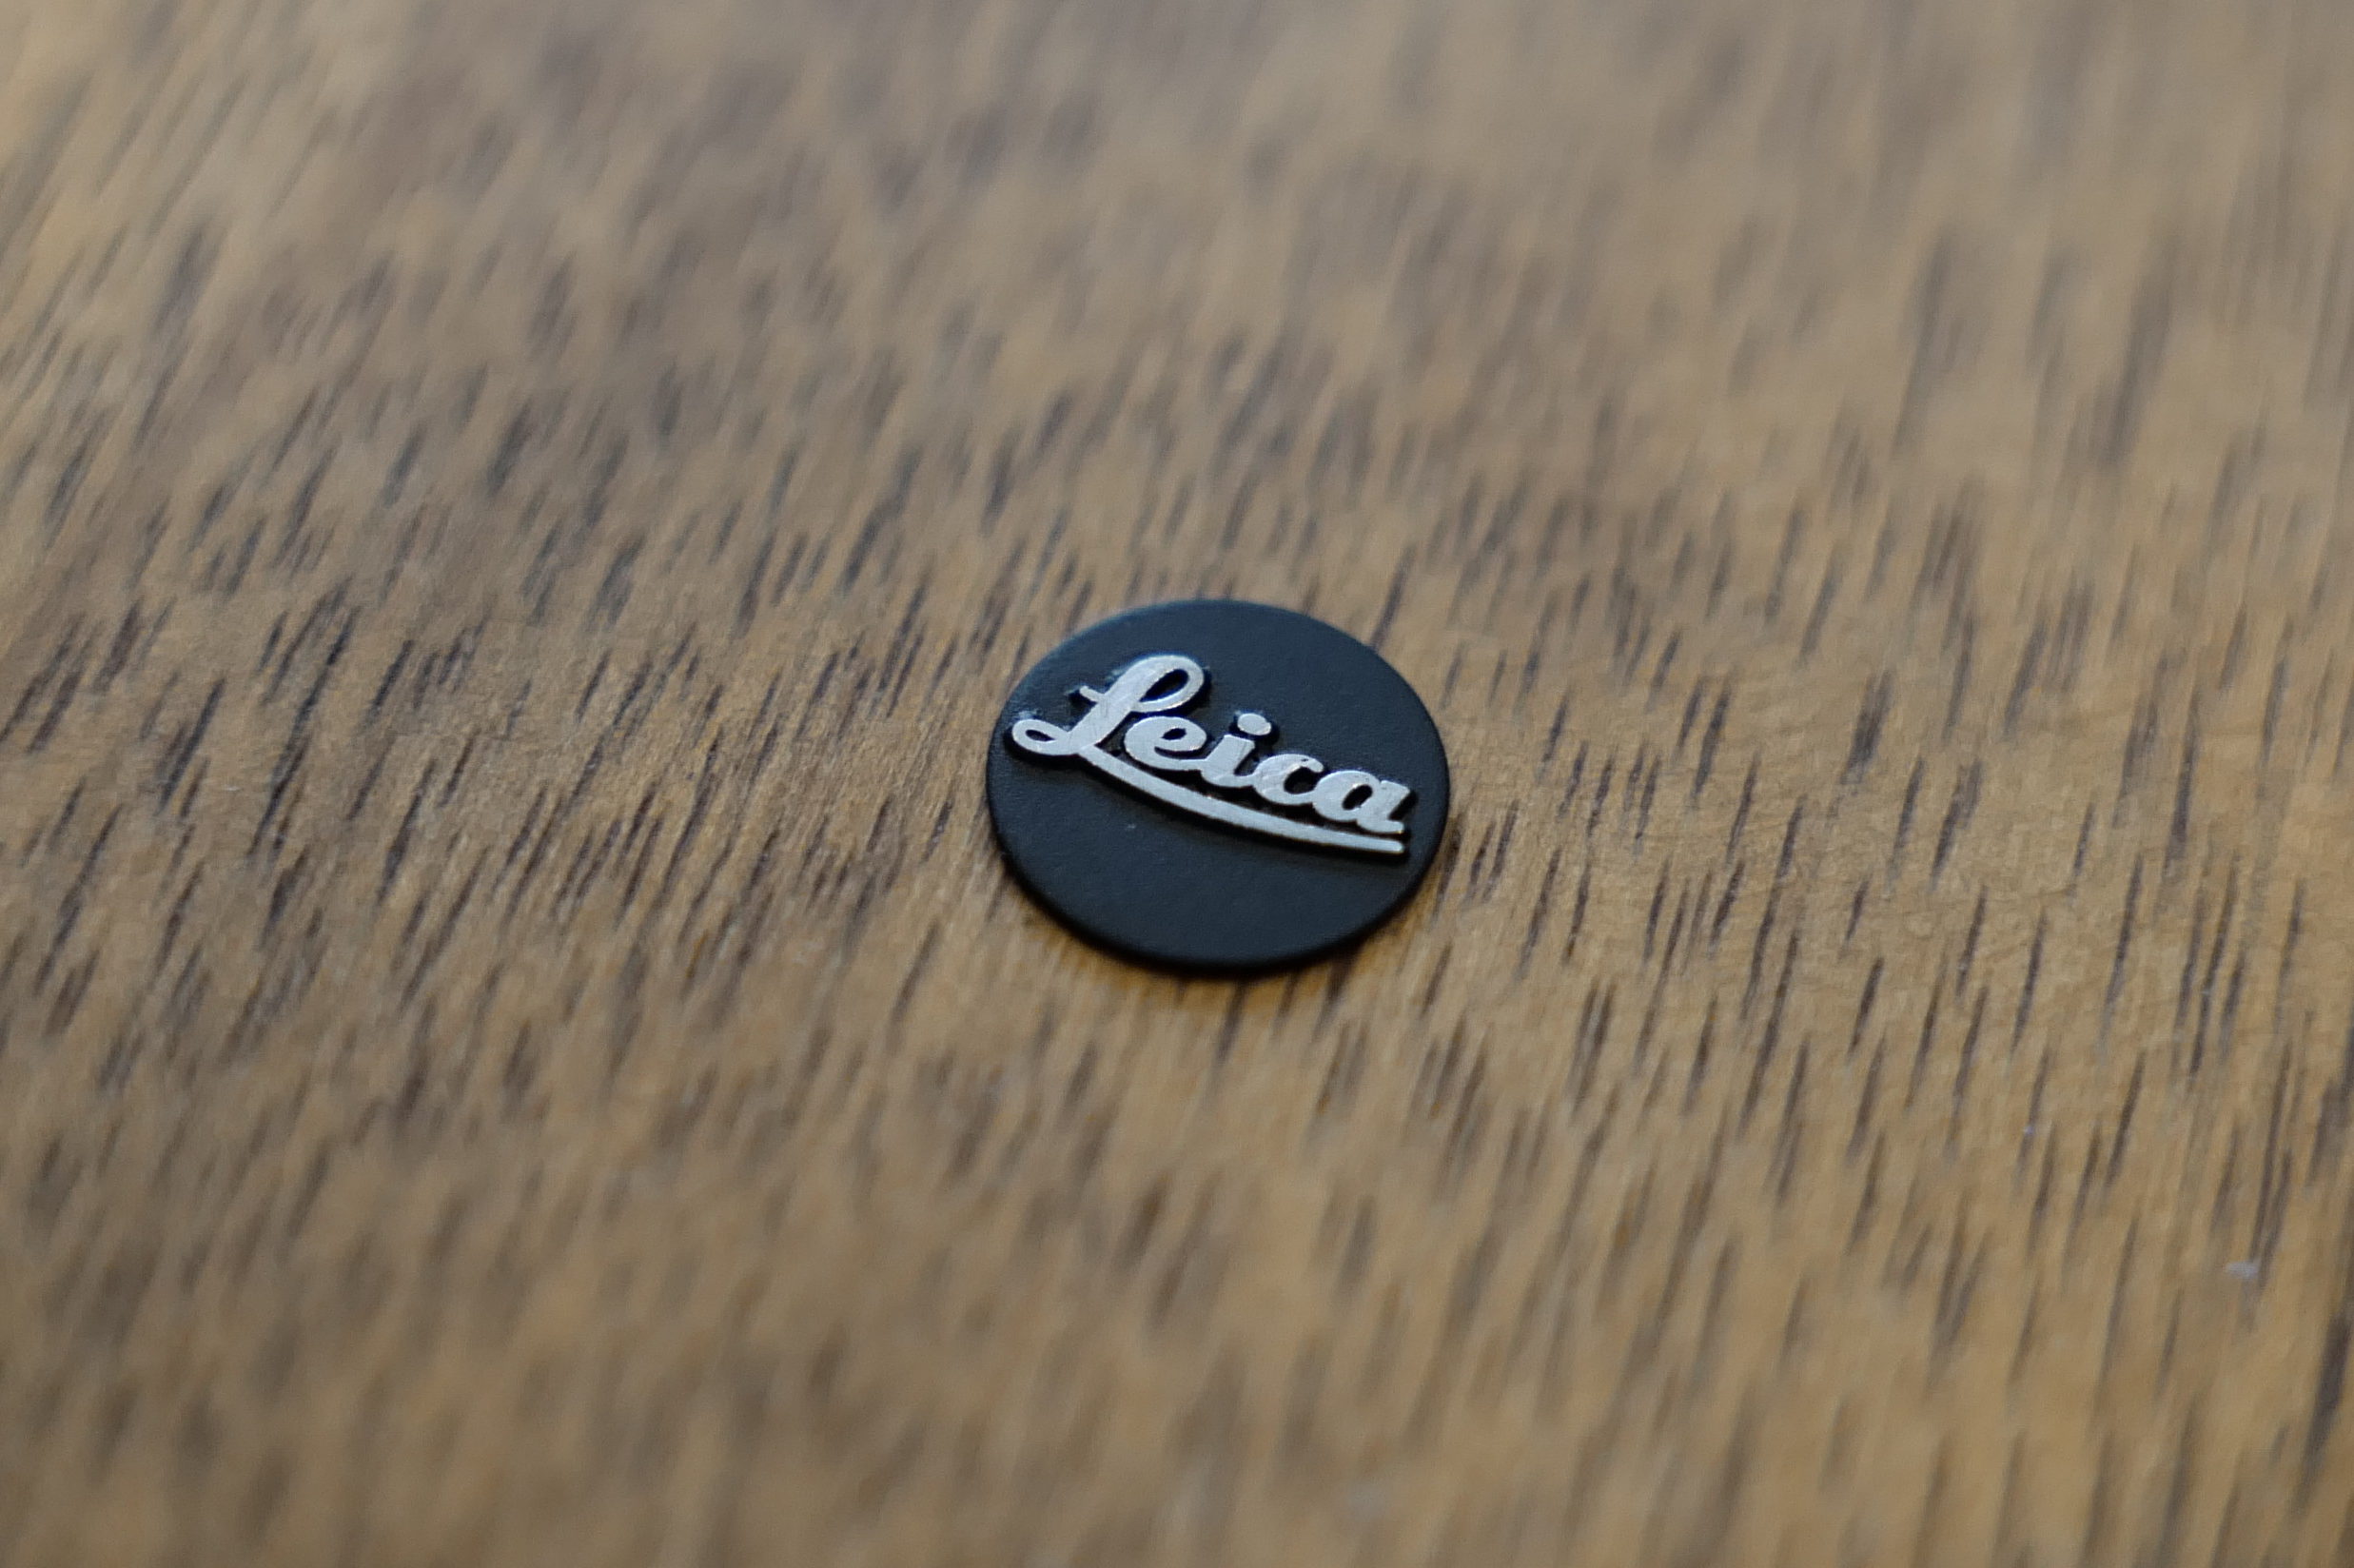 Leica】M9を黒バッジに変更してみた。 | LEICAのある生活